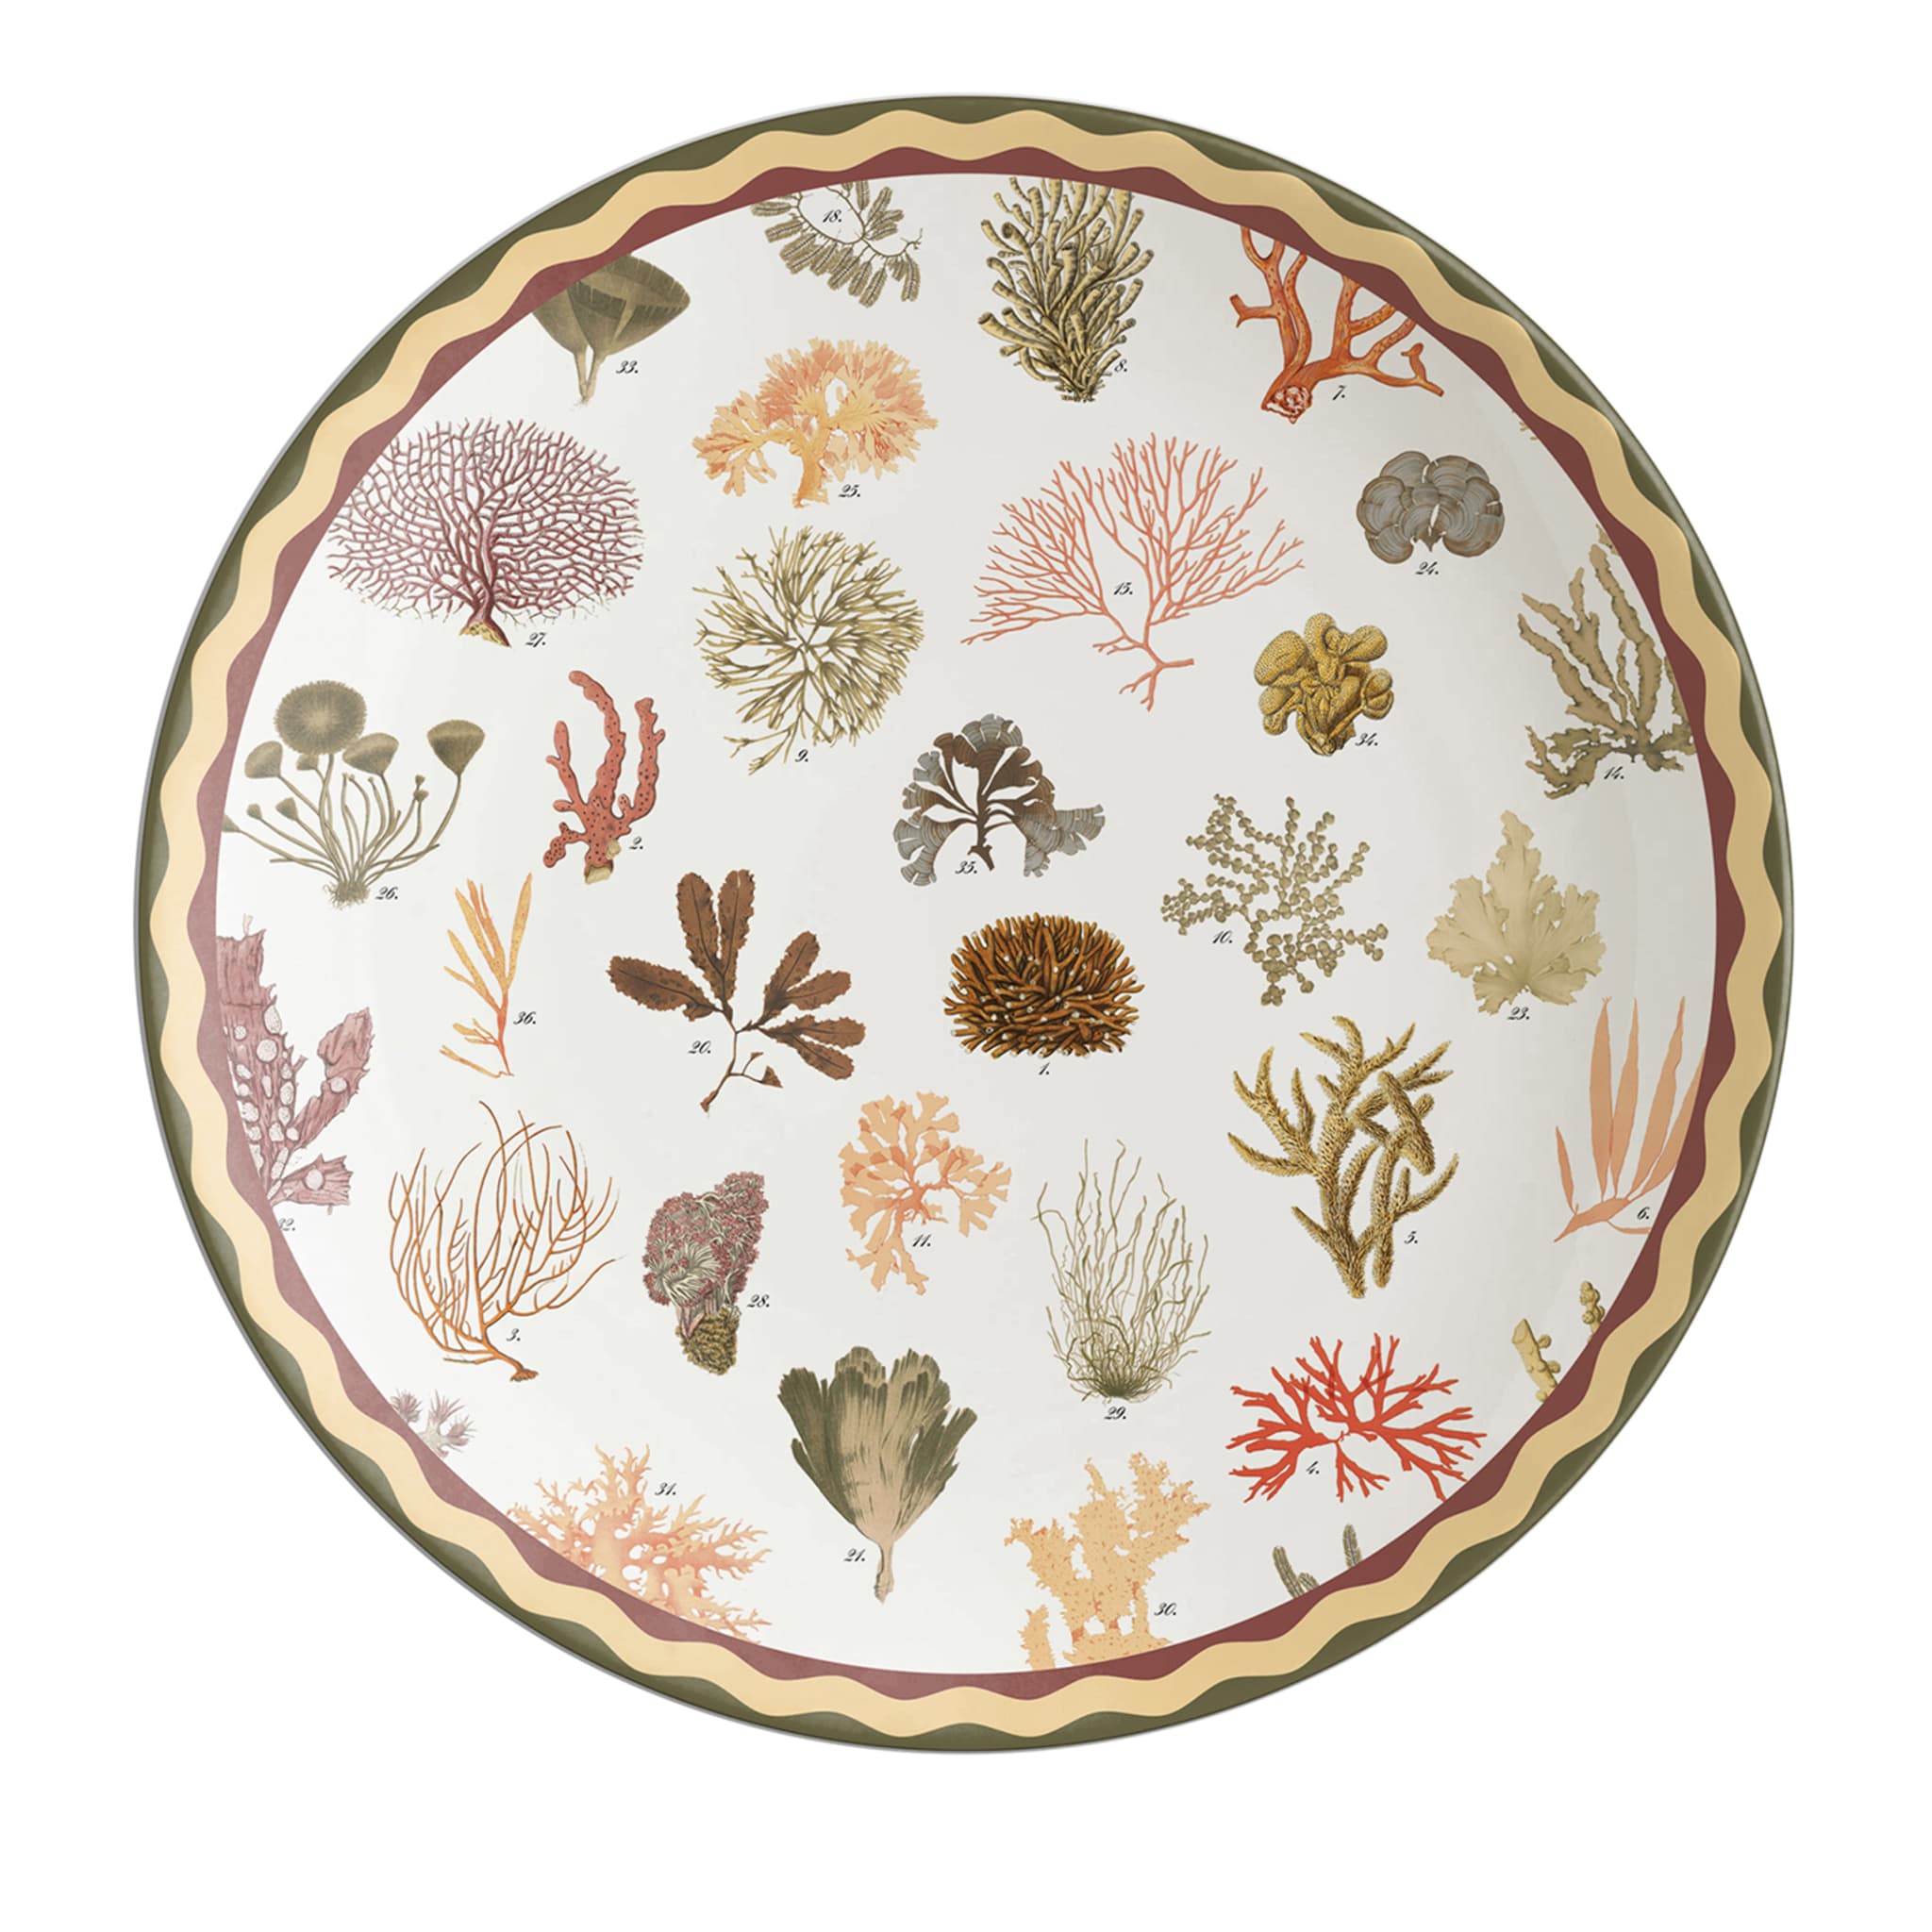 Cabinet De Curiosités Porcelain Charger Plate With Corals - Main view